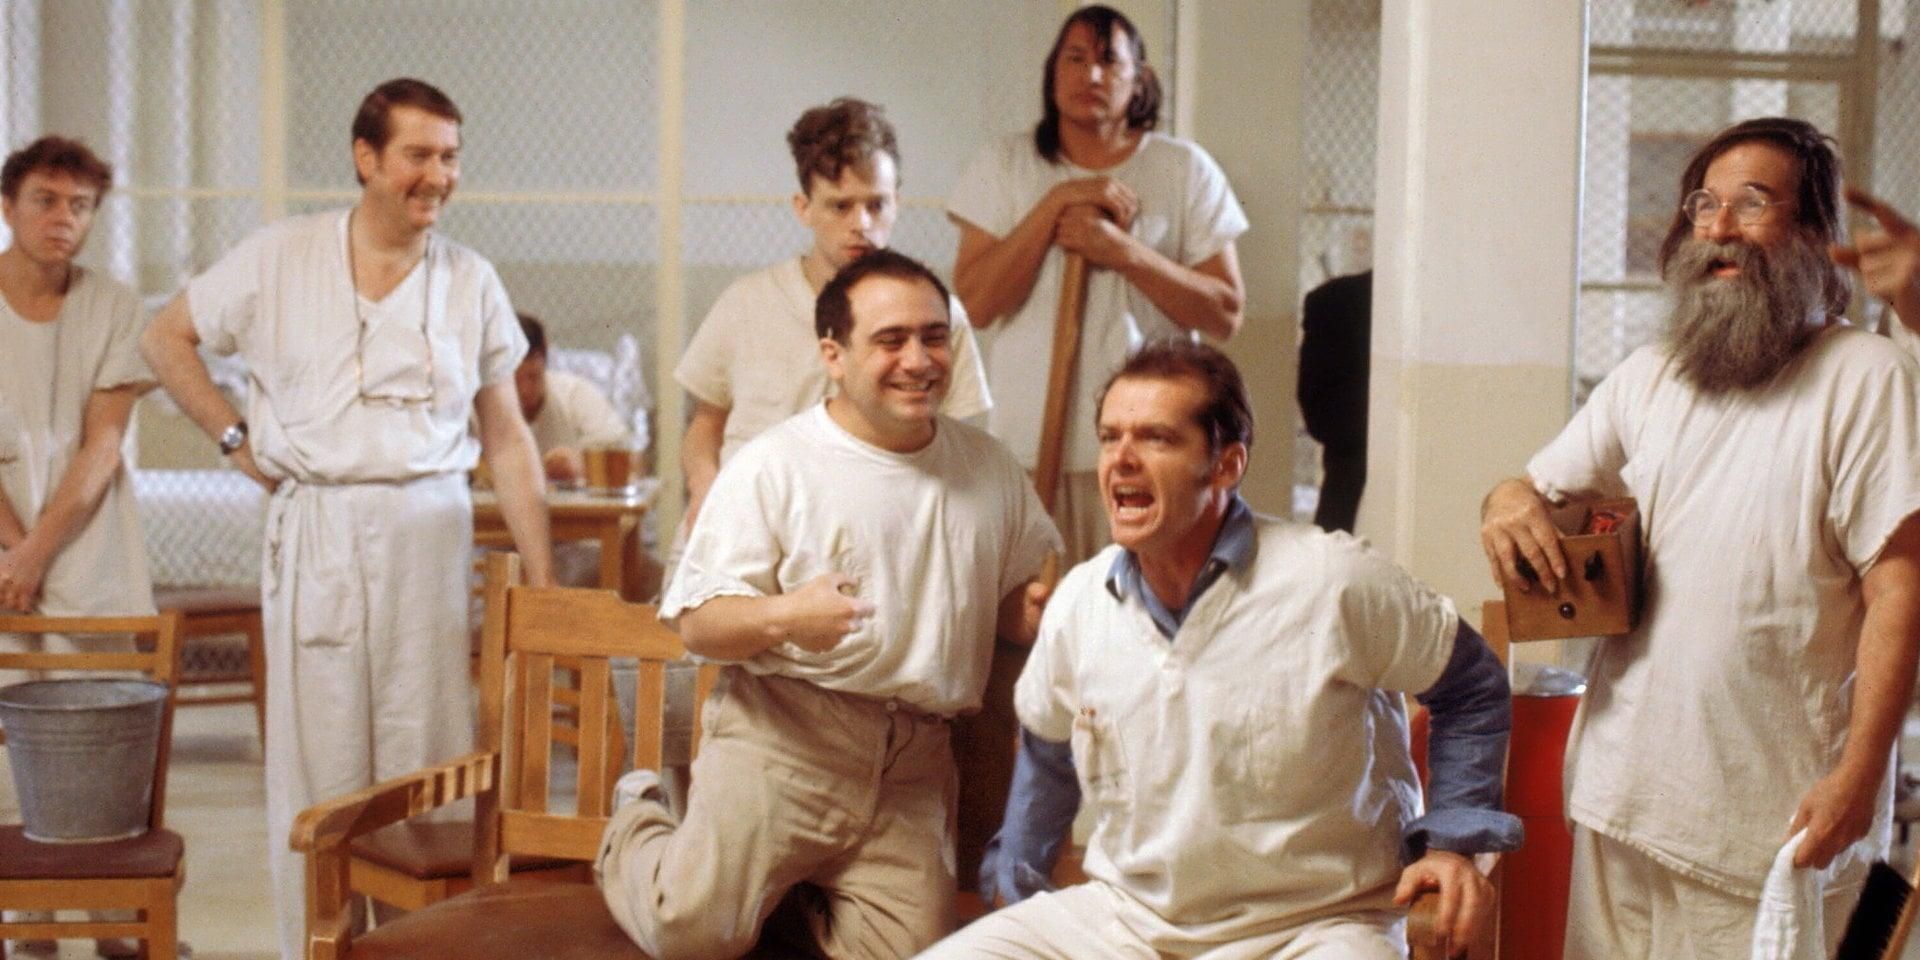 Jack Nicholson, Danny DeVito, William Redfield, Will Sampson in One Flew Over the Cuckoo's Nest